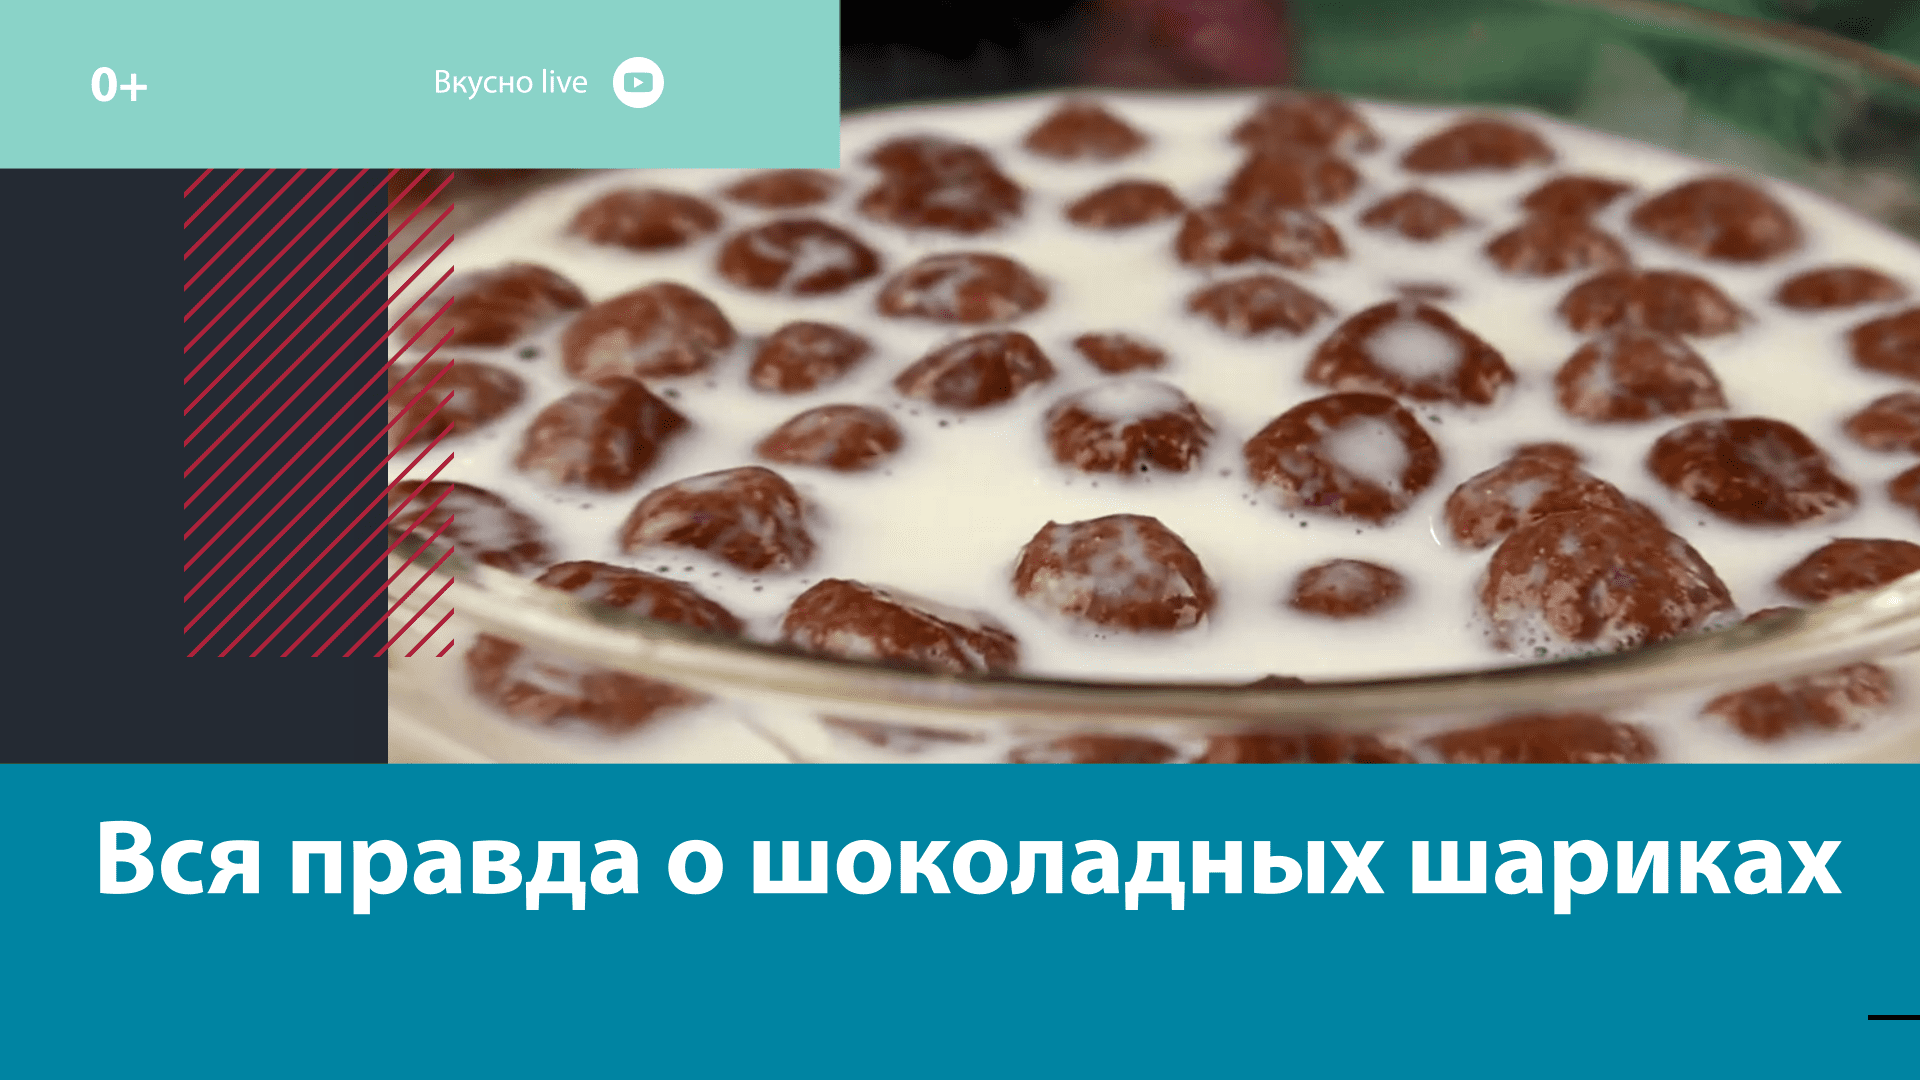 Полезны ли шоколадные шарики? — Москва FM